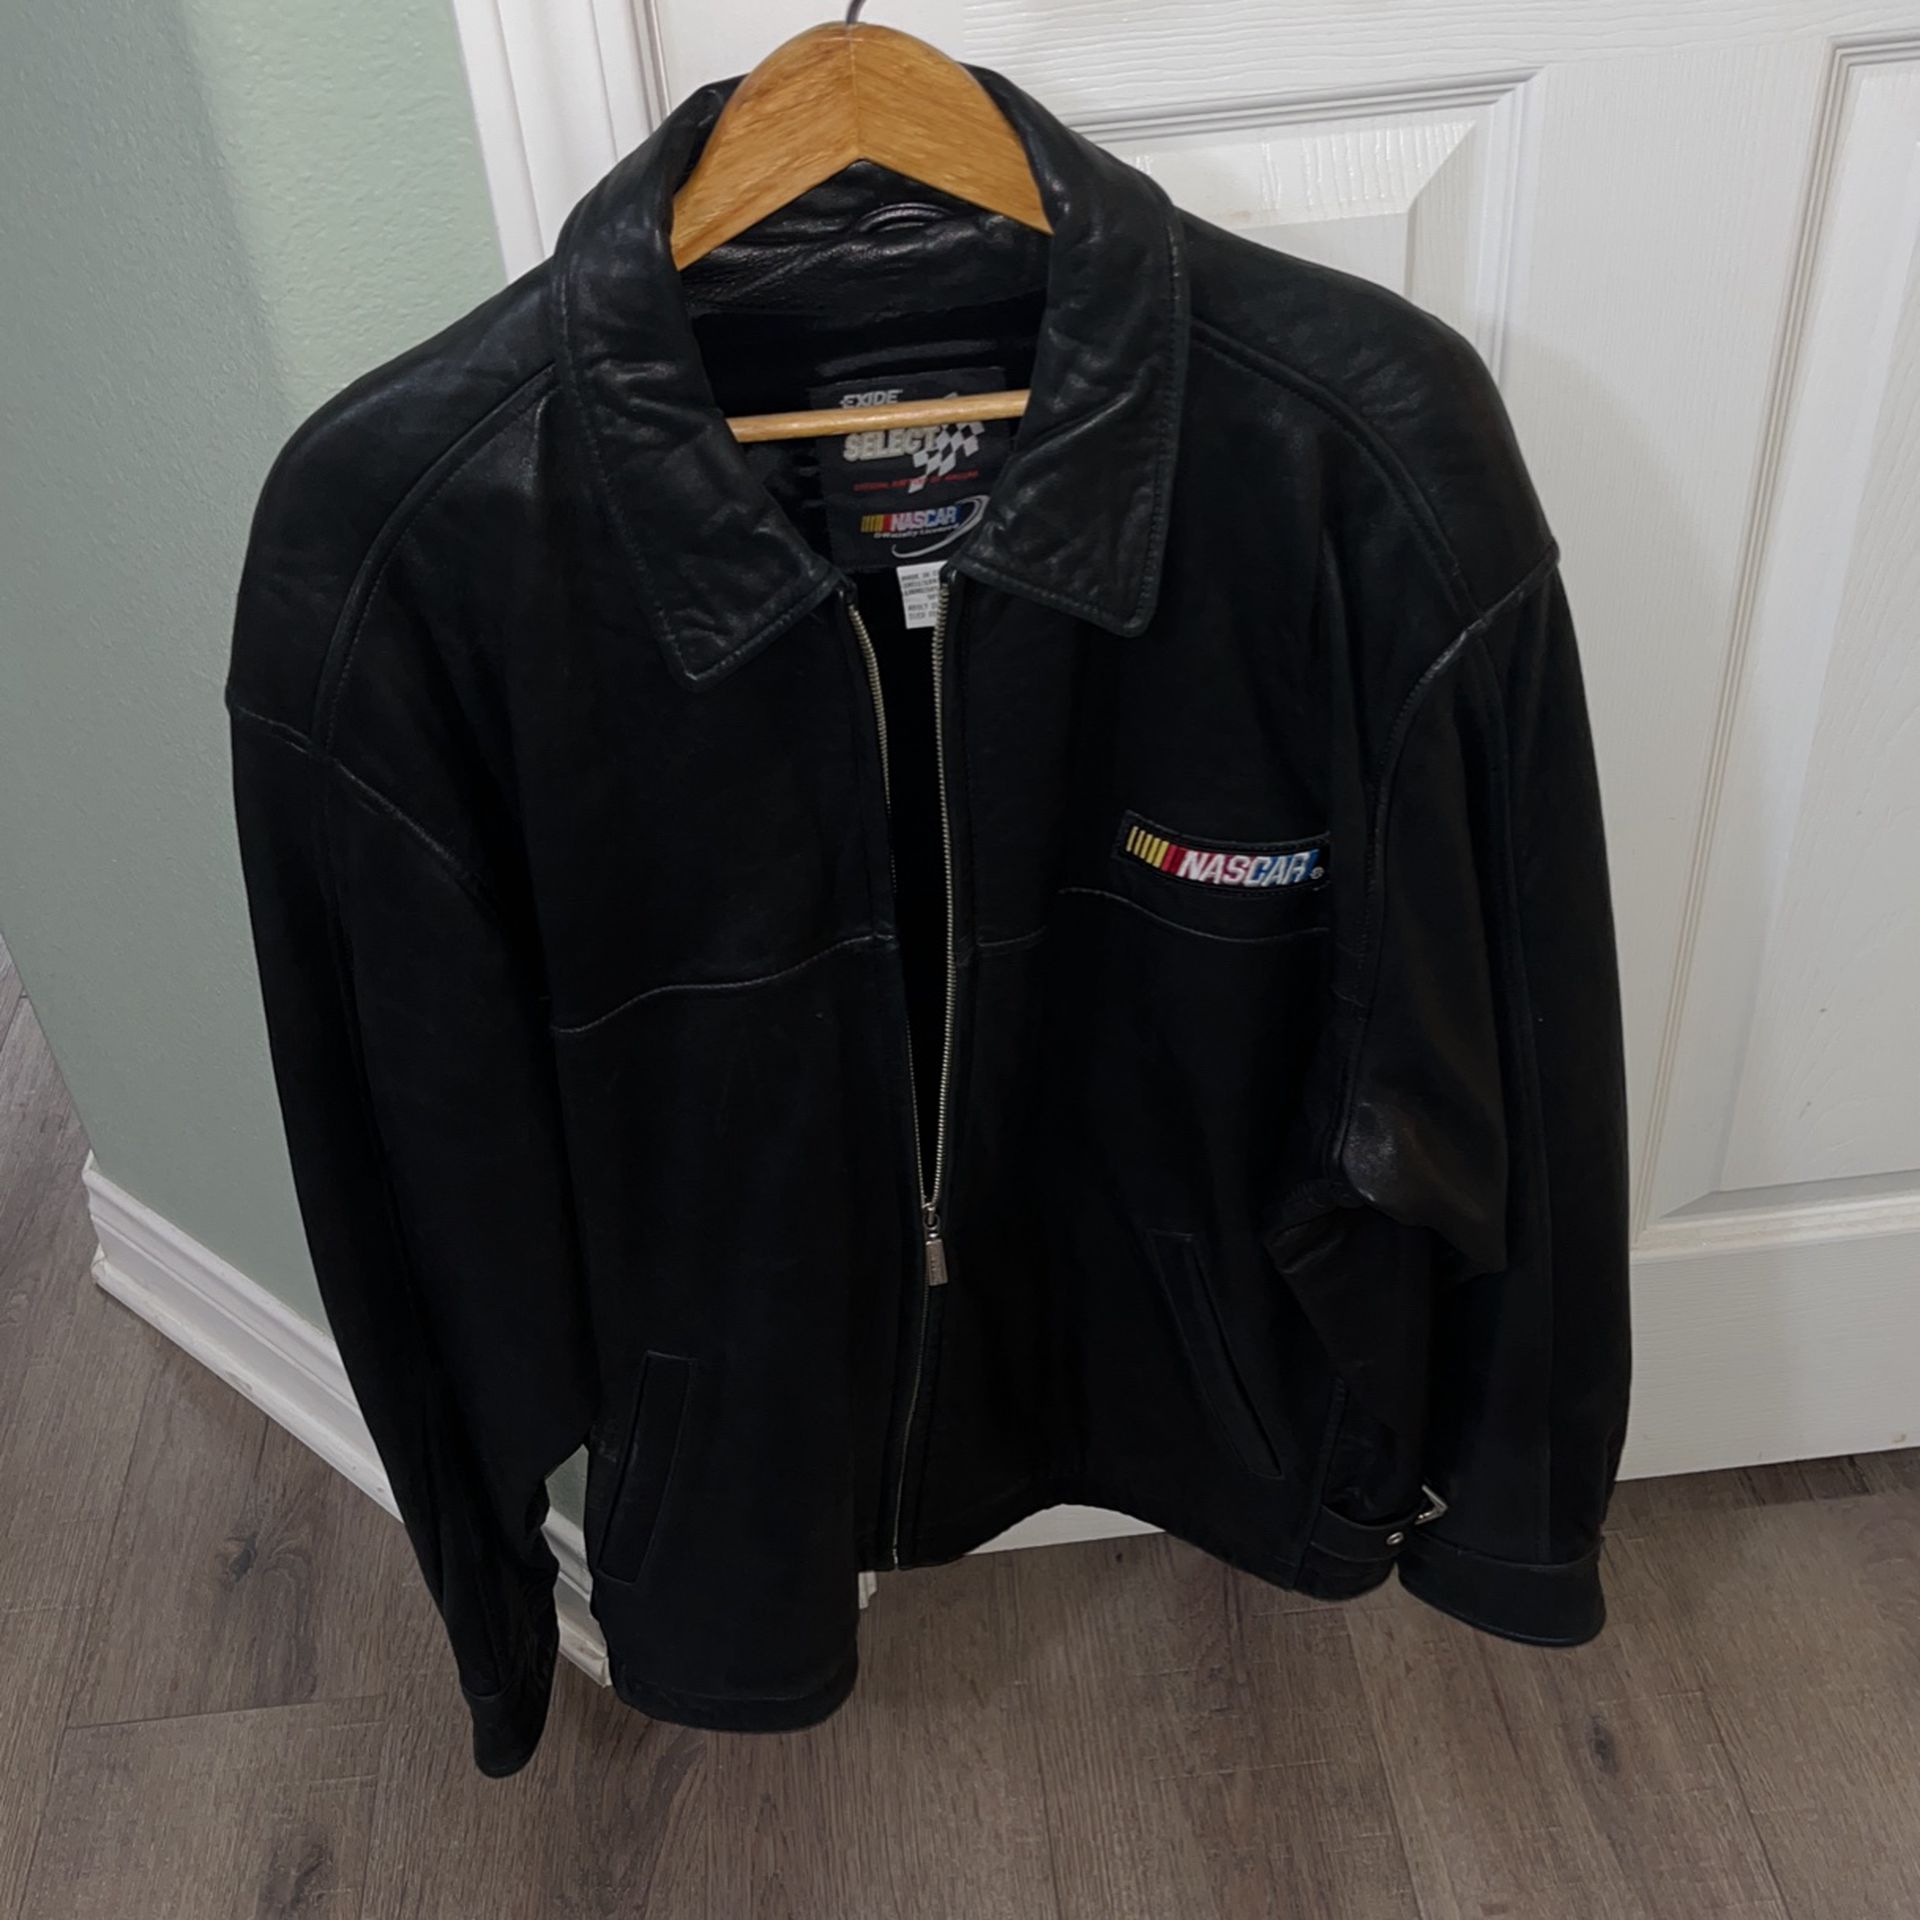 NASCAR 2000 Leather Jacket